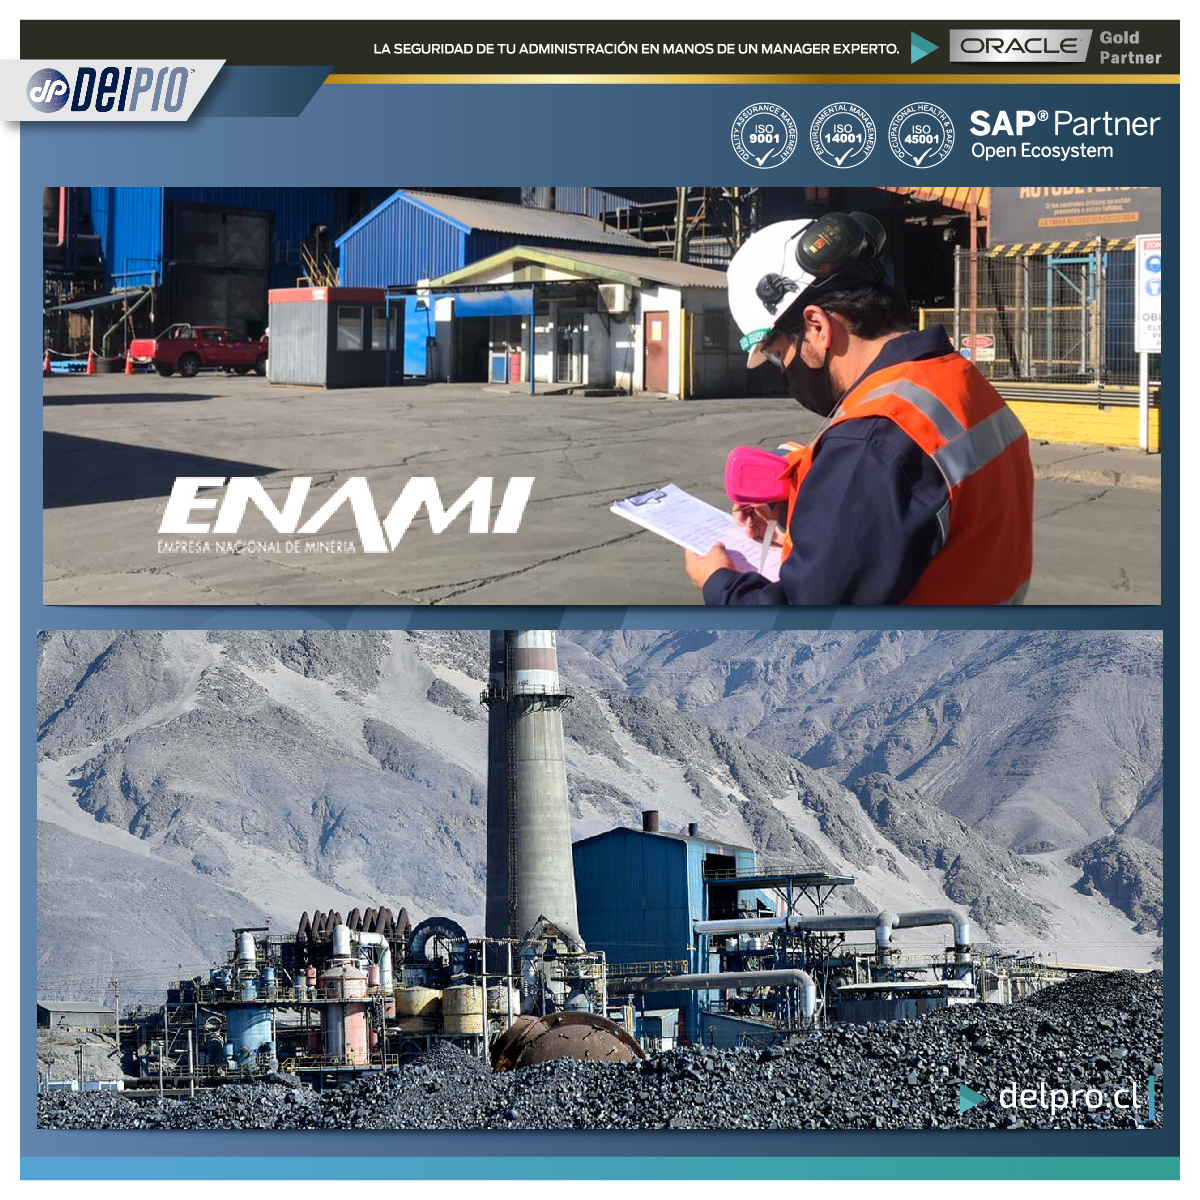 Project Management en Minería, para la estatal ENAMI Empresa Nacional de Minería